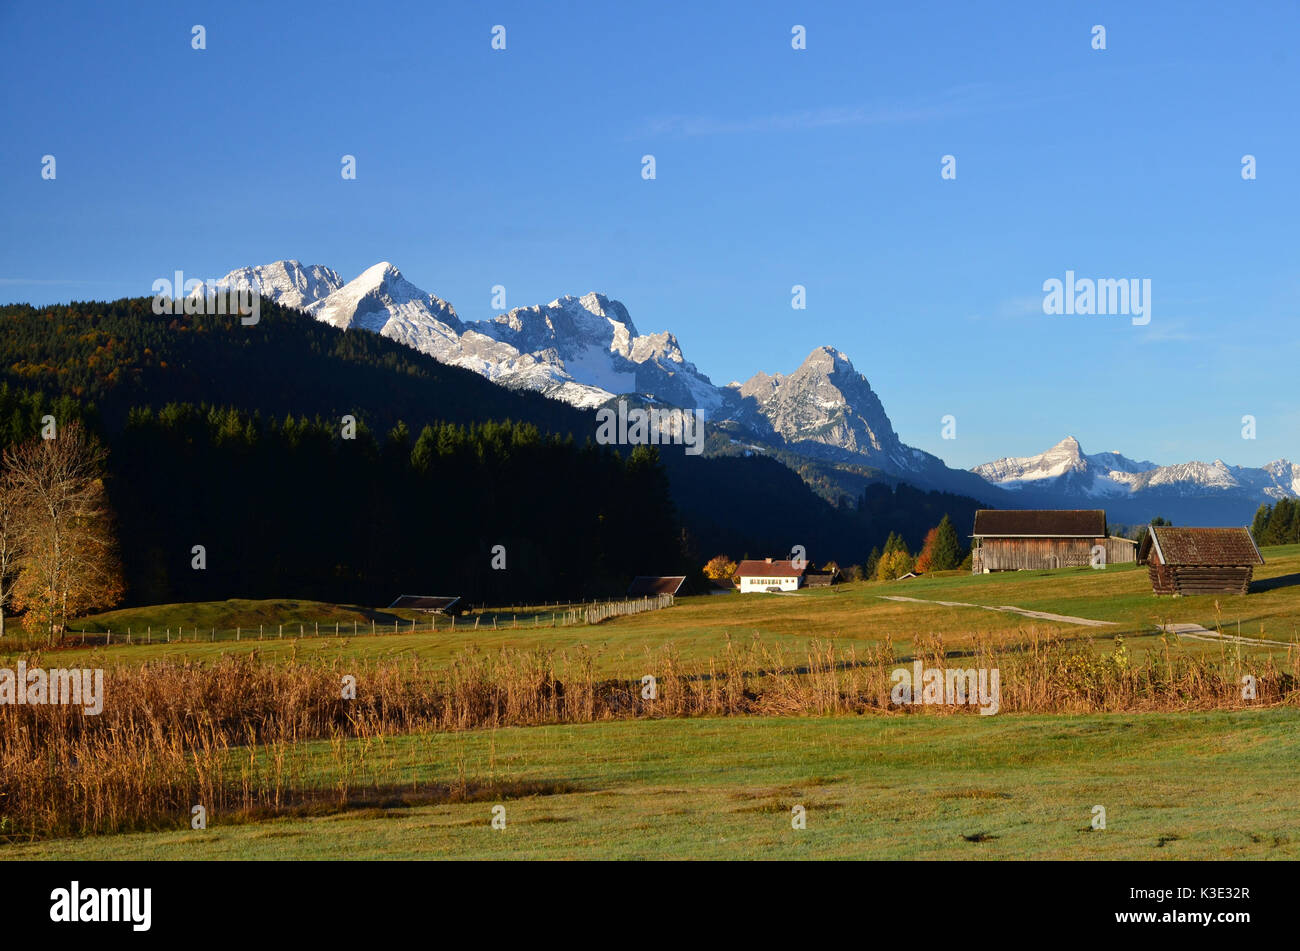 Deutschland, Bayern, Gerold, Wettersteingebirge, Nutzwiese, Heustadl, Stock Photo